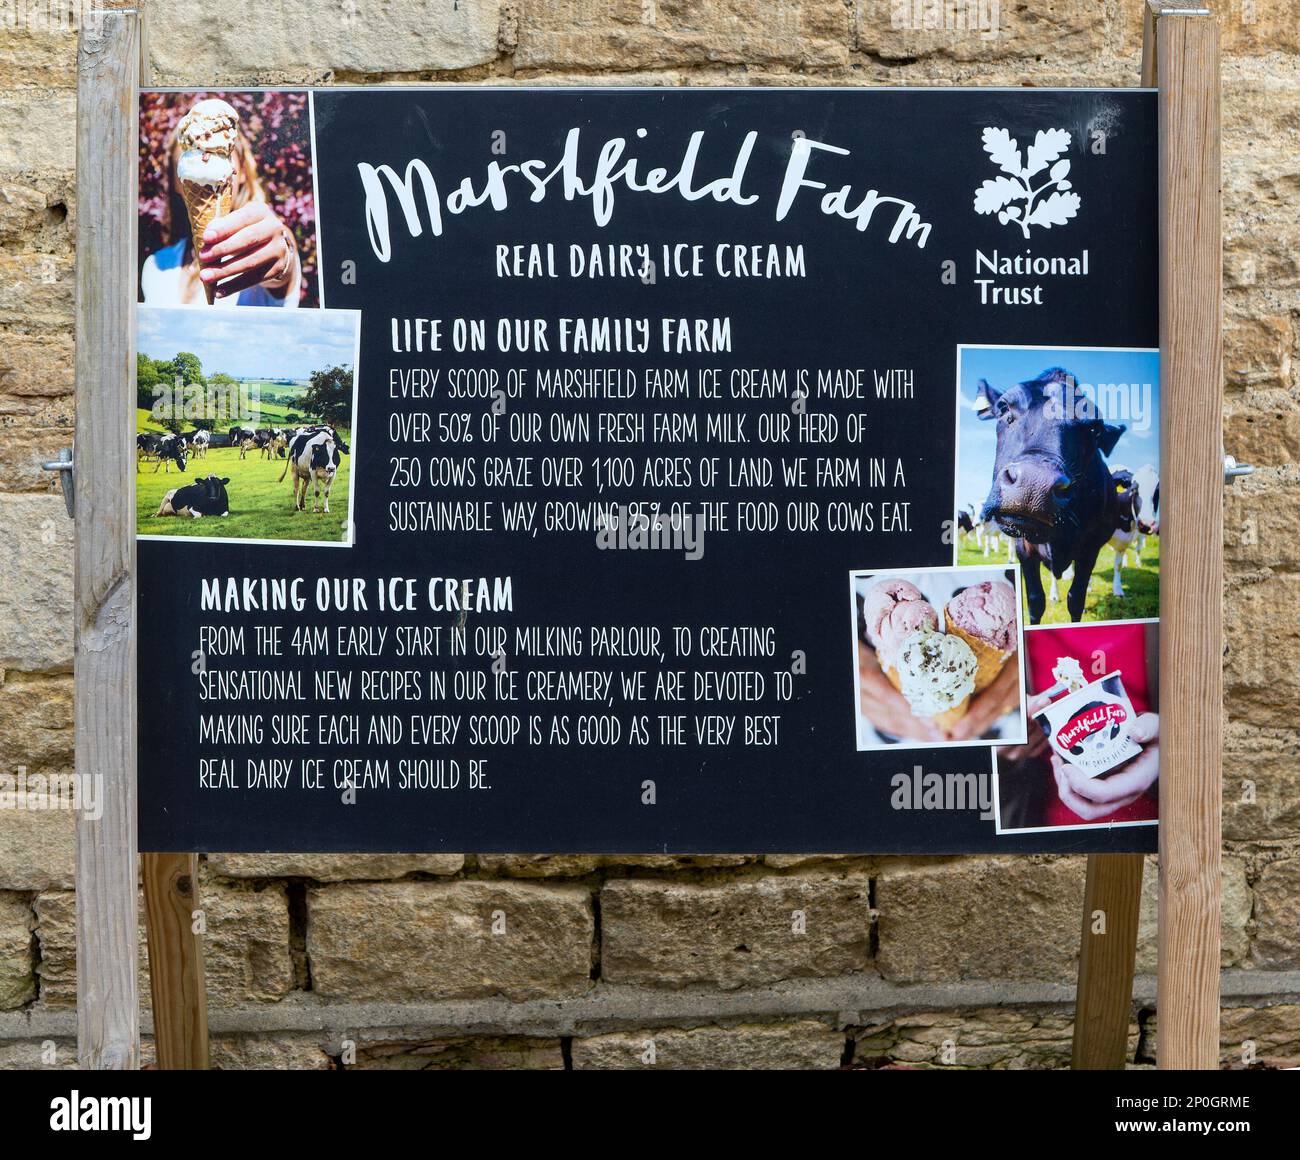 National Trust segno pubblicitario per Marshfield farm real lattery Ice cream, Lacock, Wiltshire, Inghilterra, Regno Unito Foto Stock